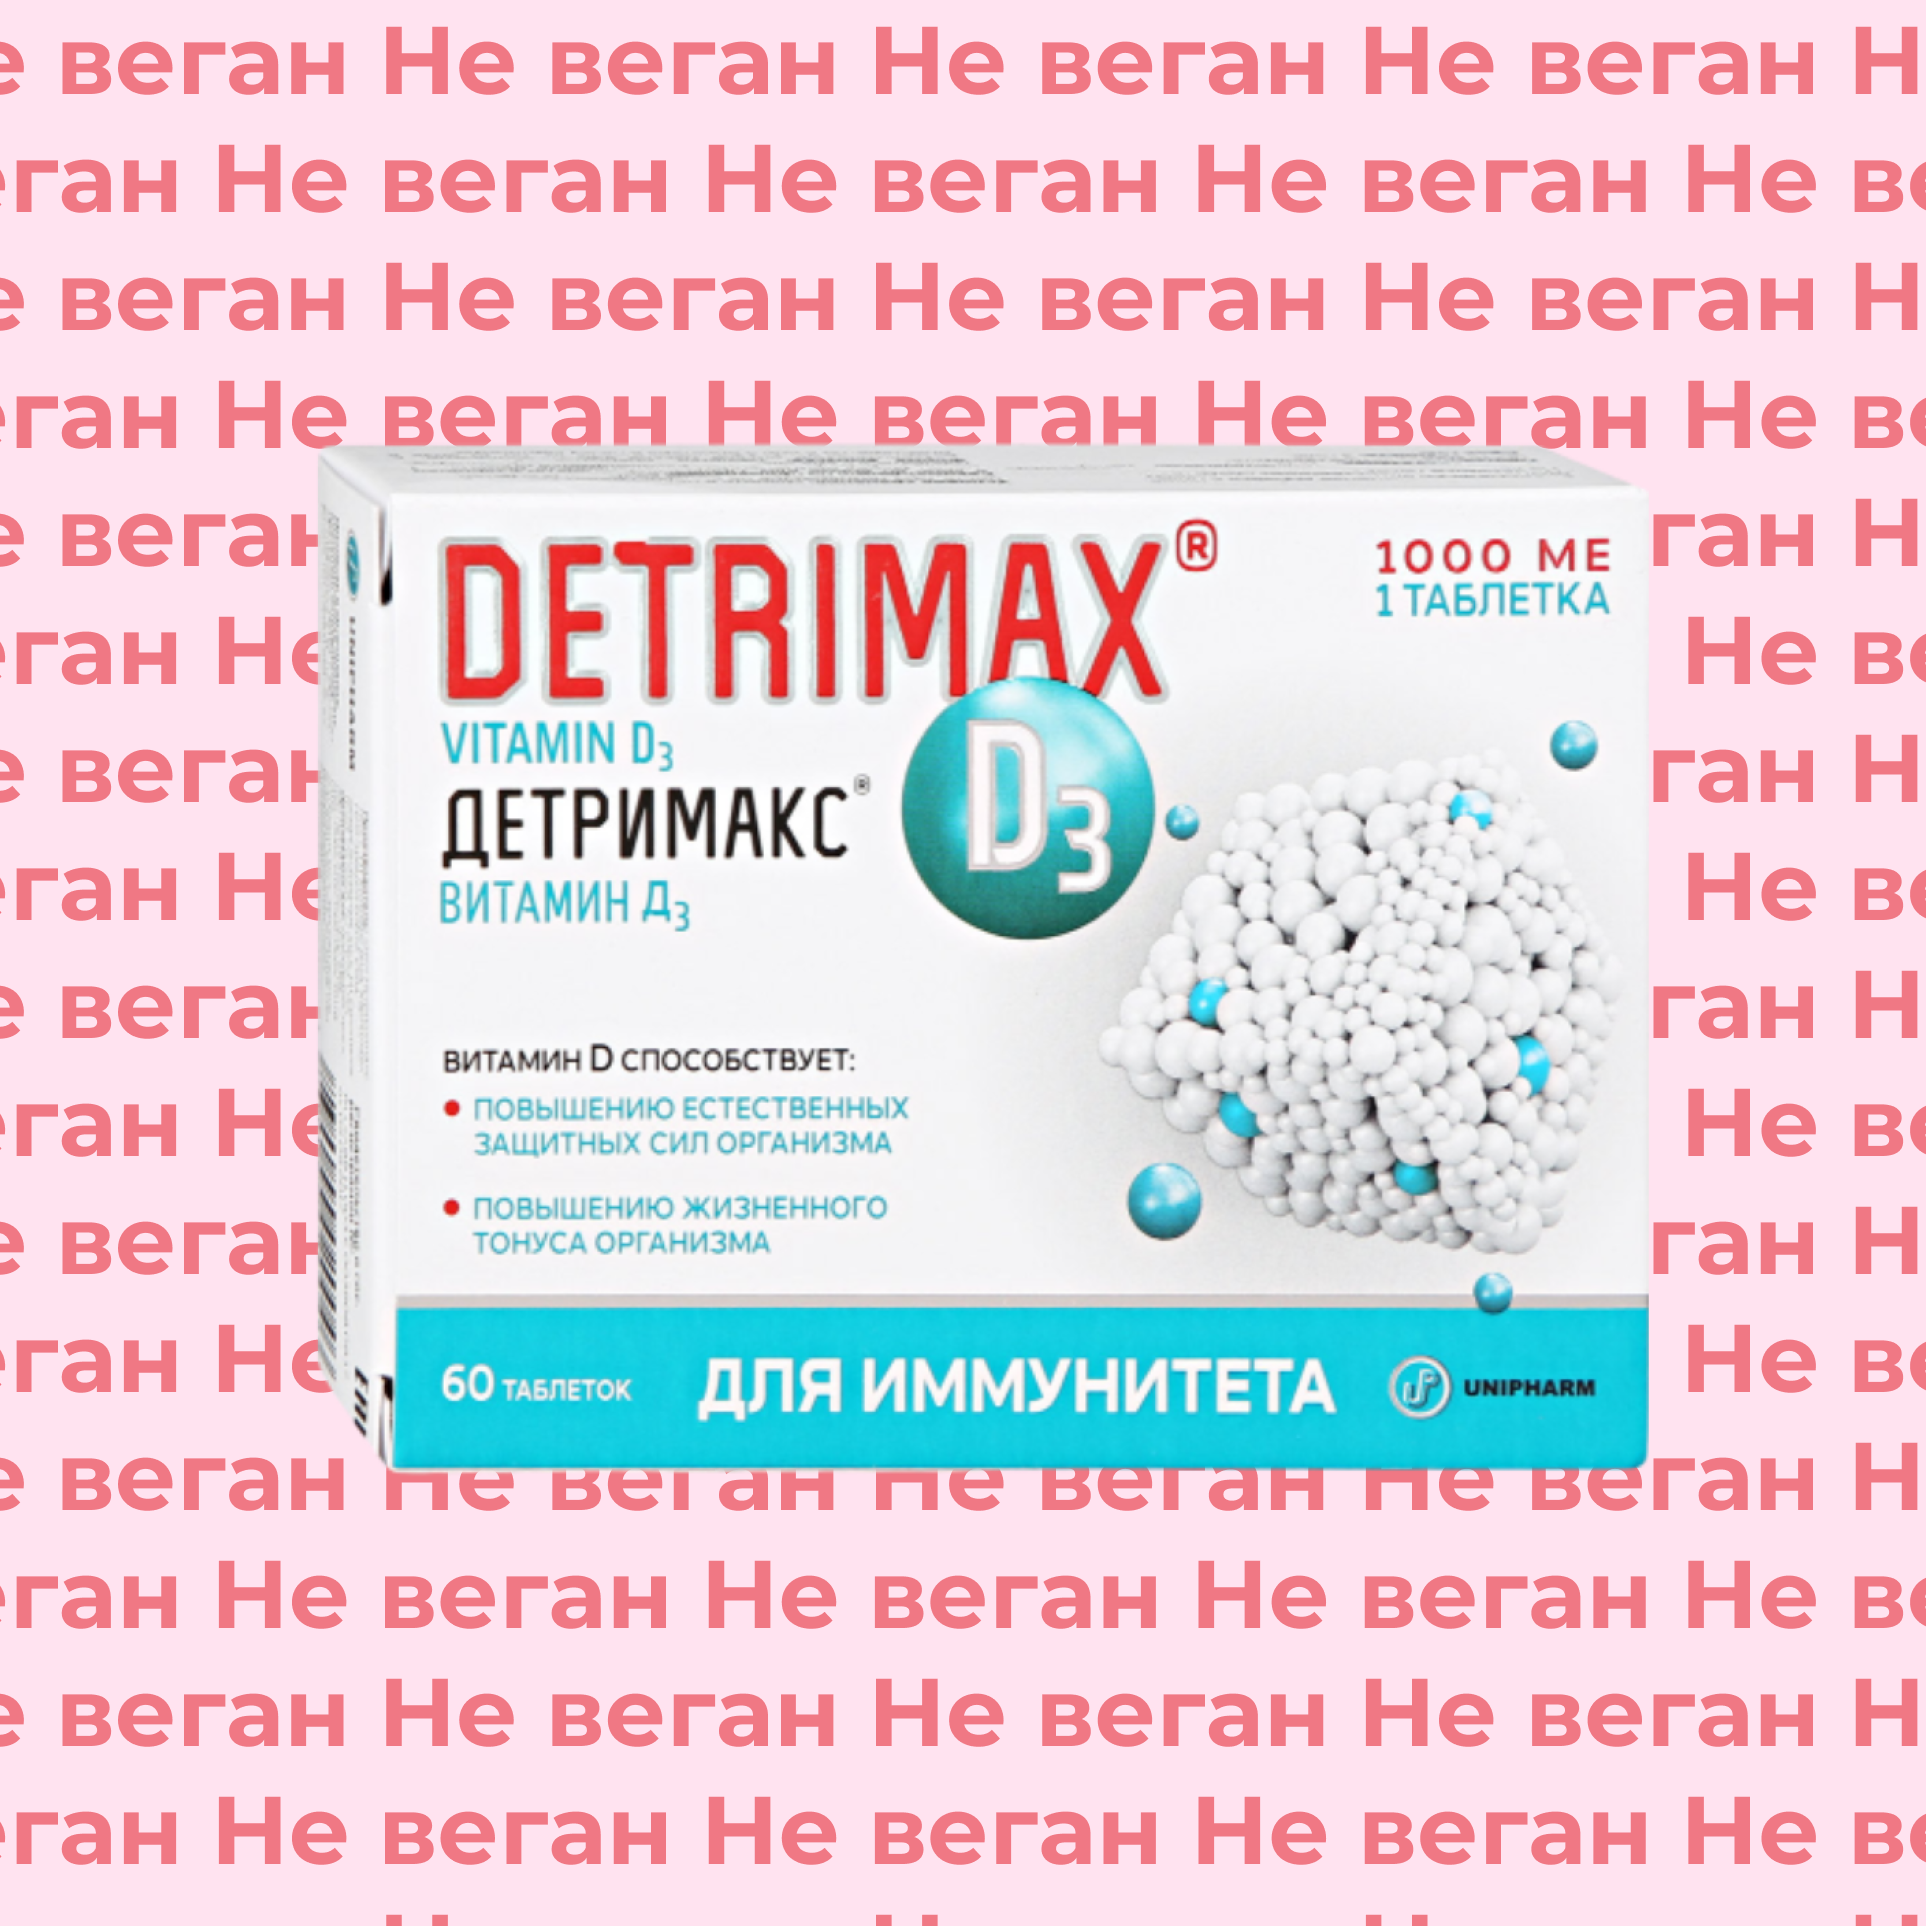 Детримакс витамин Д3 (Detrimax D3) не по вегану